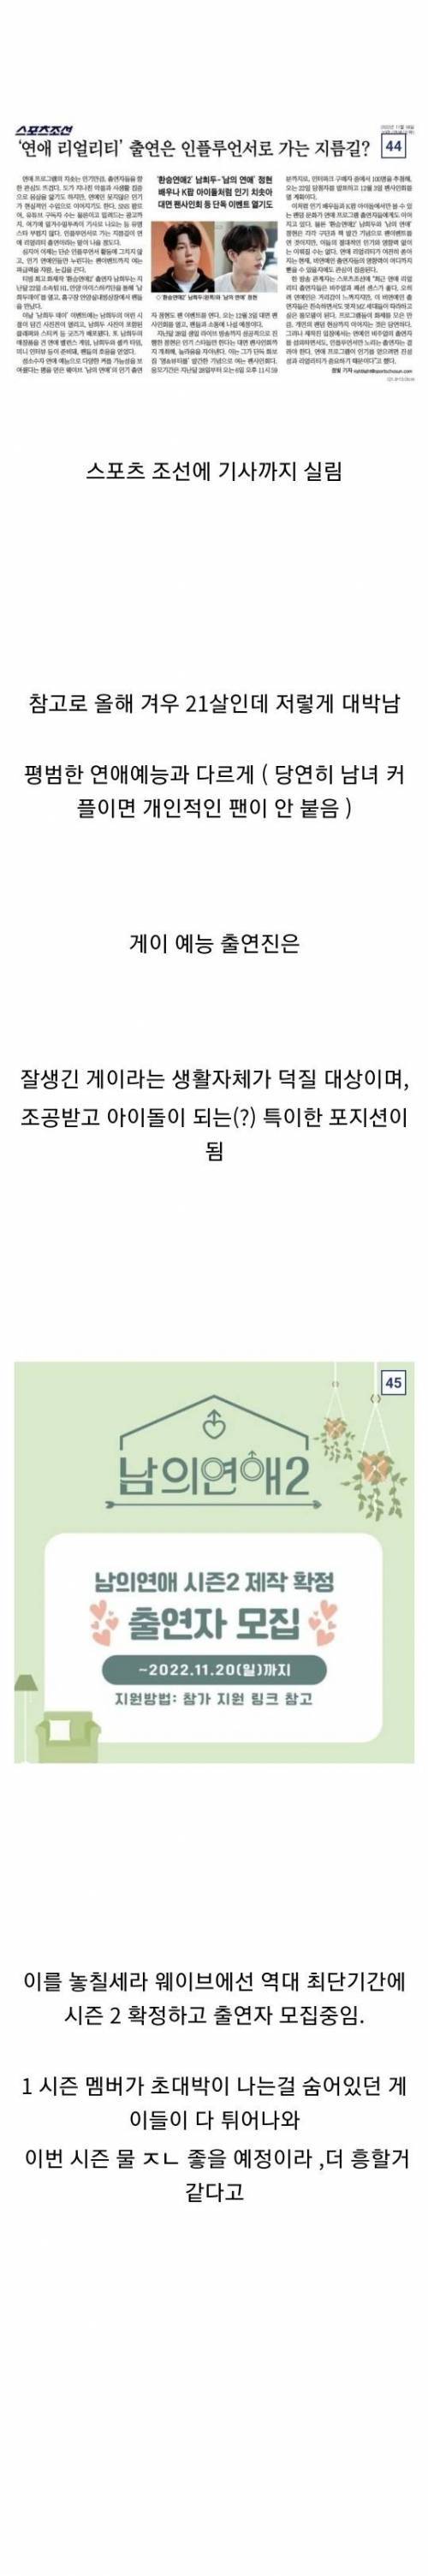 출연 멤버가 초 대박나서 시즌2 확정된 예능